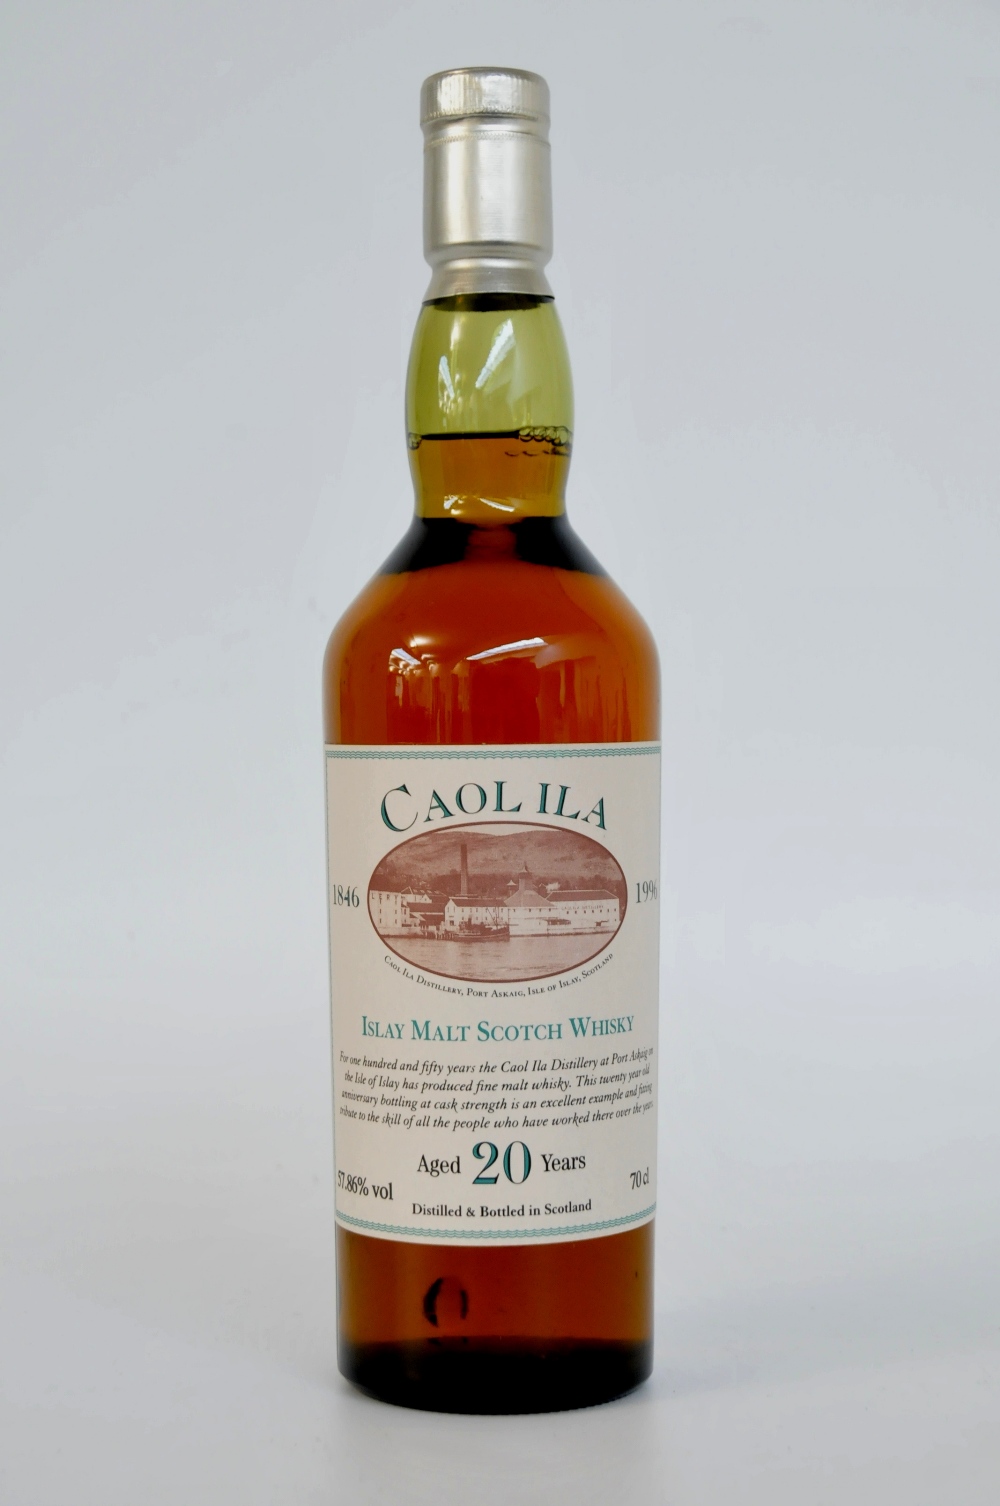 CAOL ILA 150TH ANNIVERSARY
1 bottle Caol Ila 20yo OB for 150th Anniversary 1846-1996. 70cl. 57.